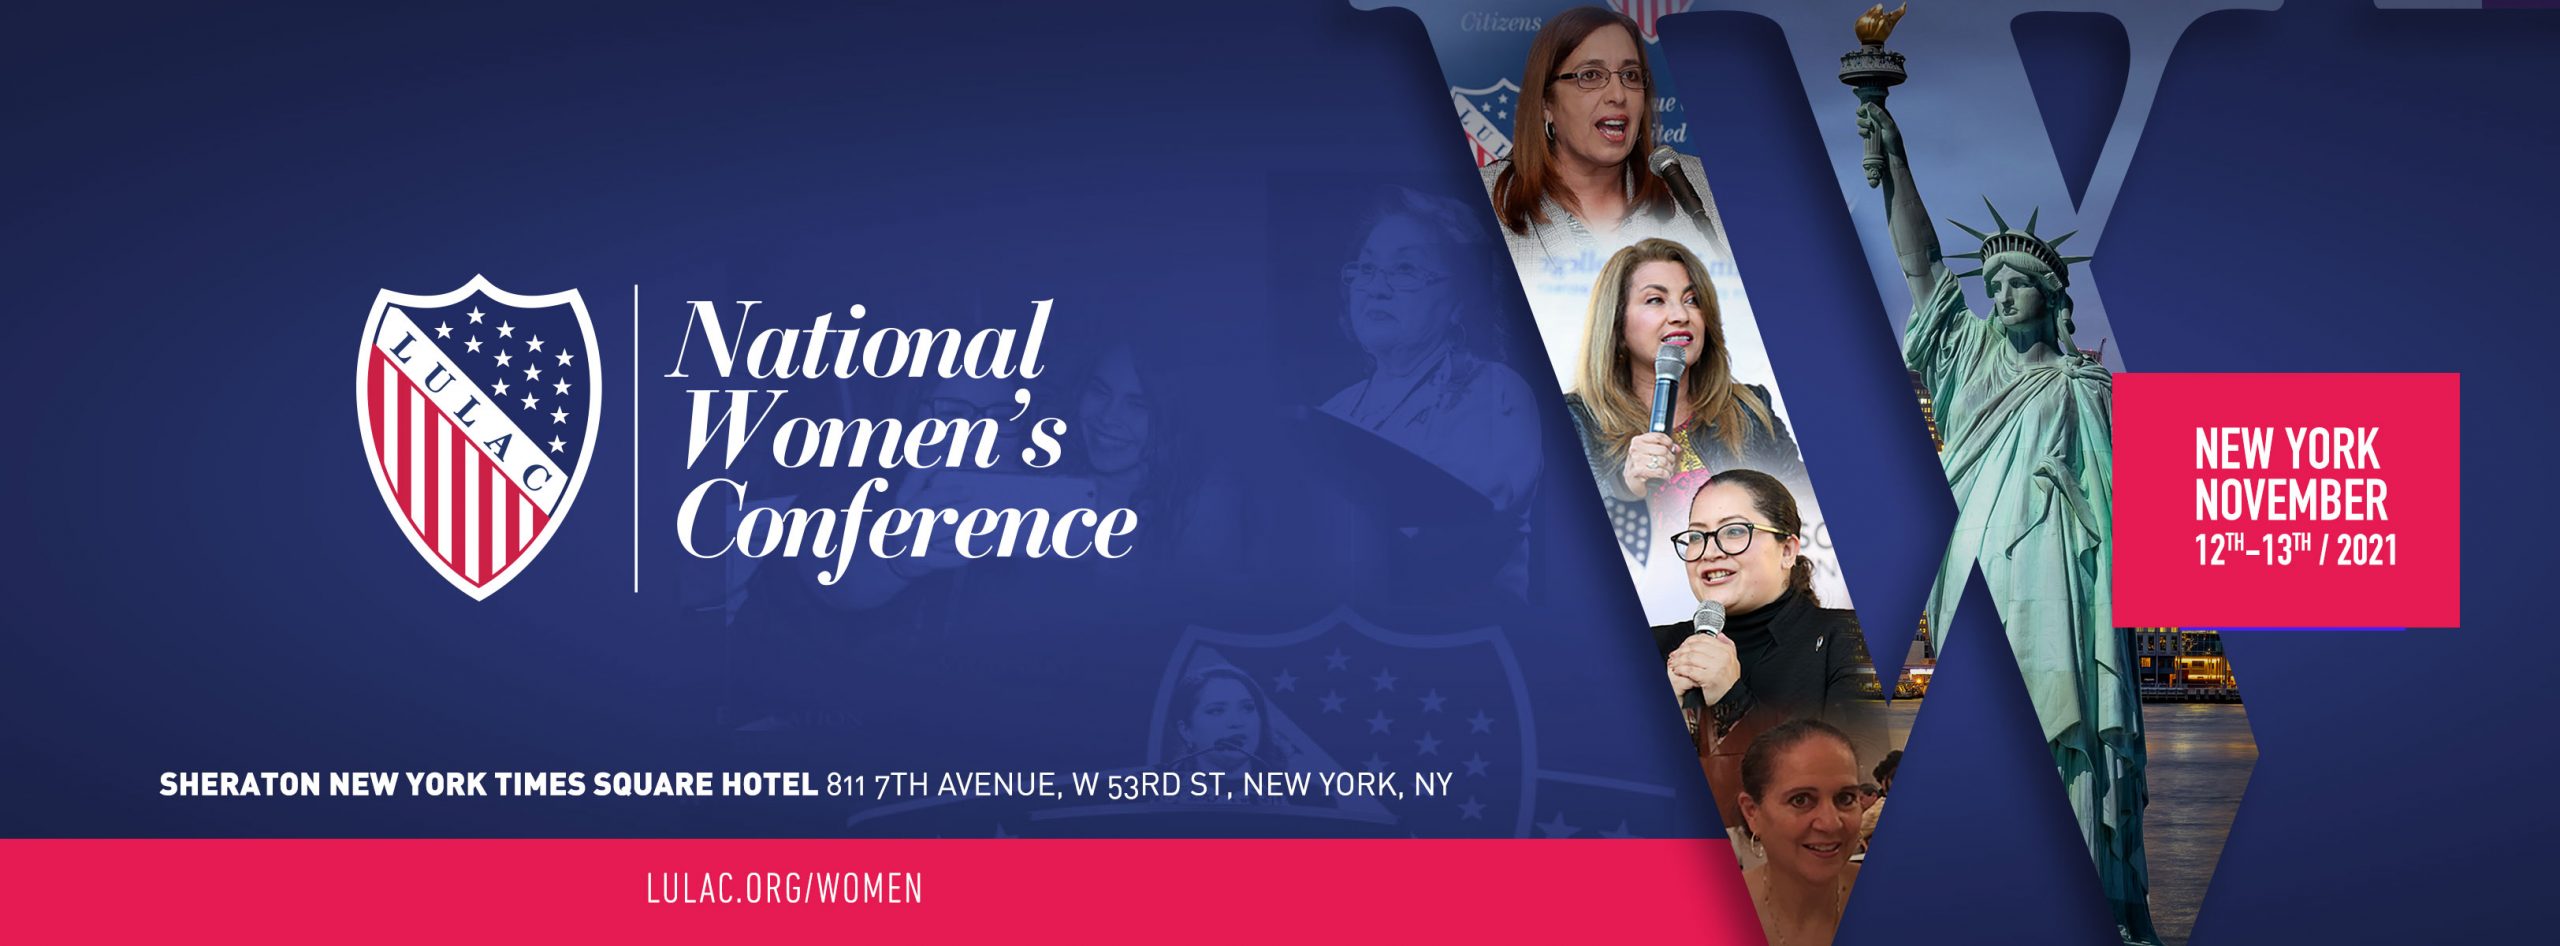 LULAC realiza Conferencia Nacional de Mujeres